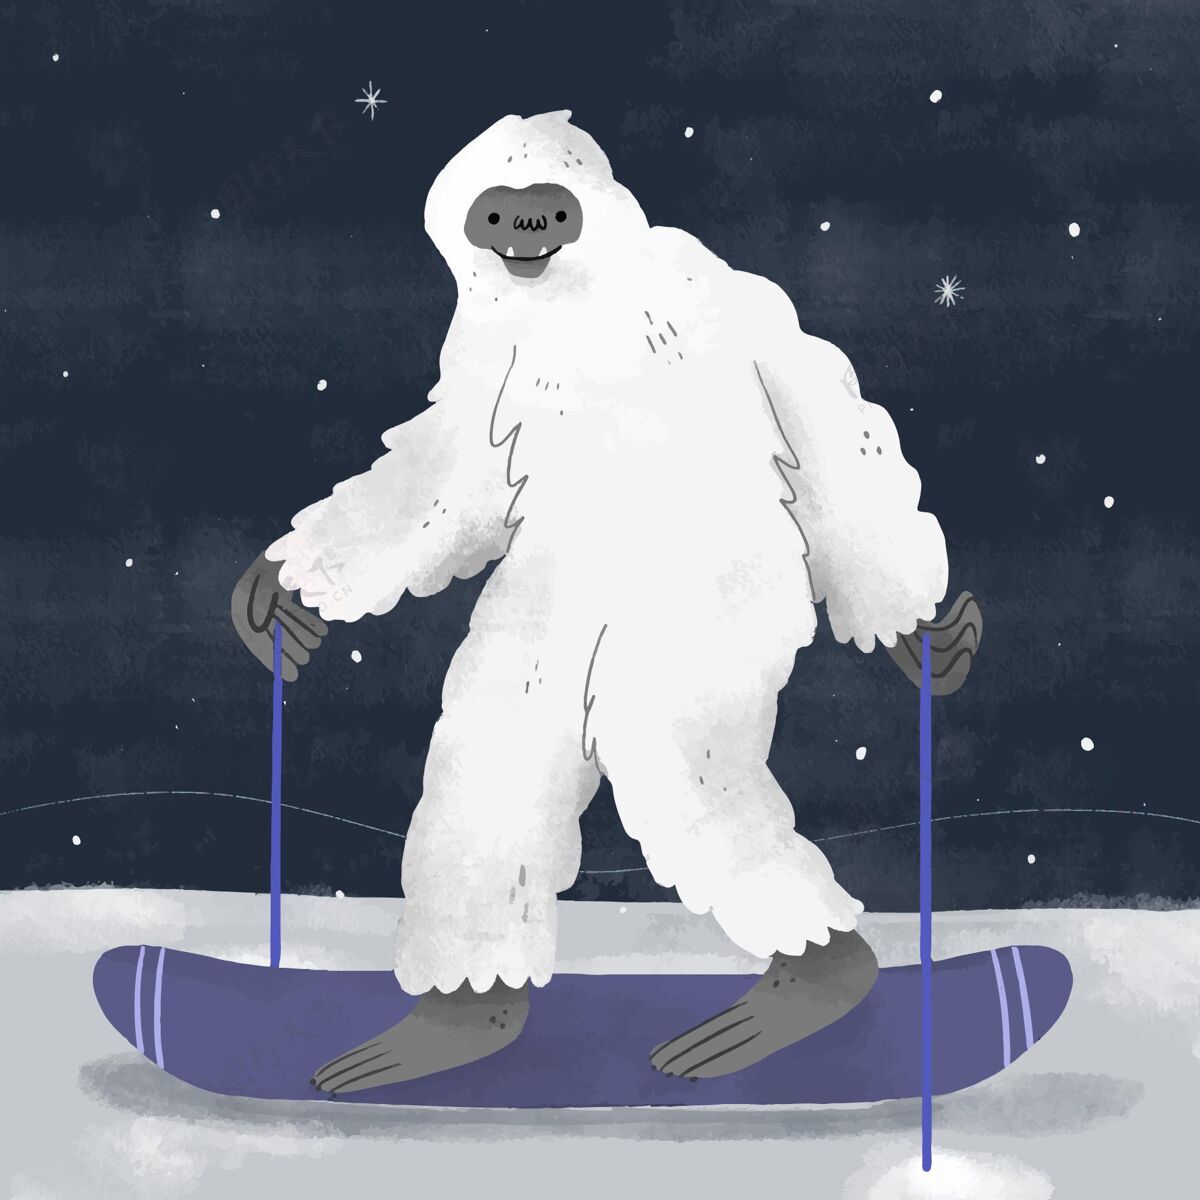 生物手绘雪人可恶雪人插图手绘动物幽灵